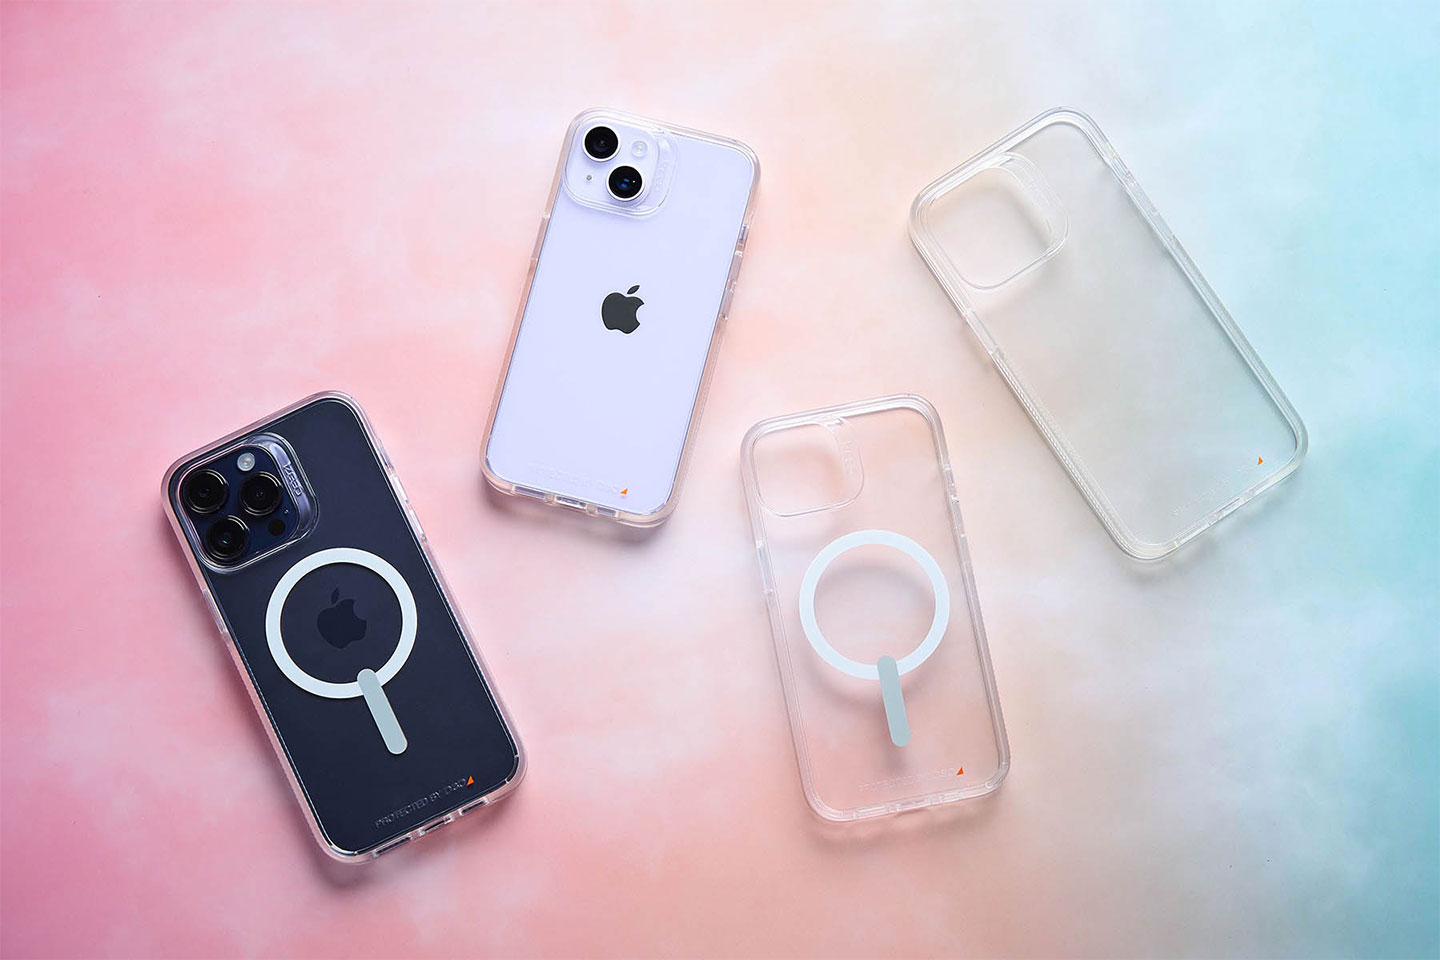 水晶系列的全透明計，最大化地保留了 iPhone 的原貌，同時也有一般、磁吸兩種款式可以選擇。